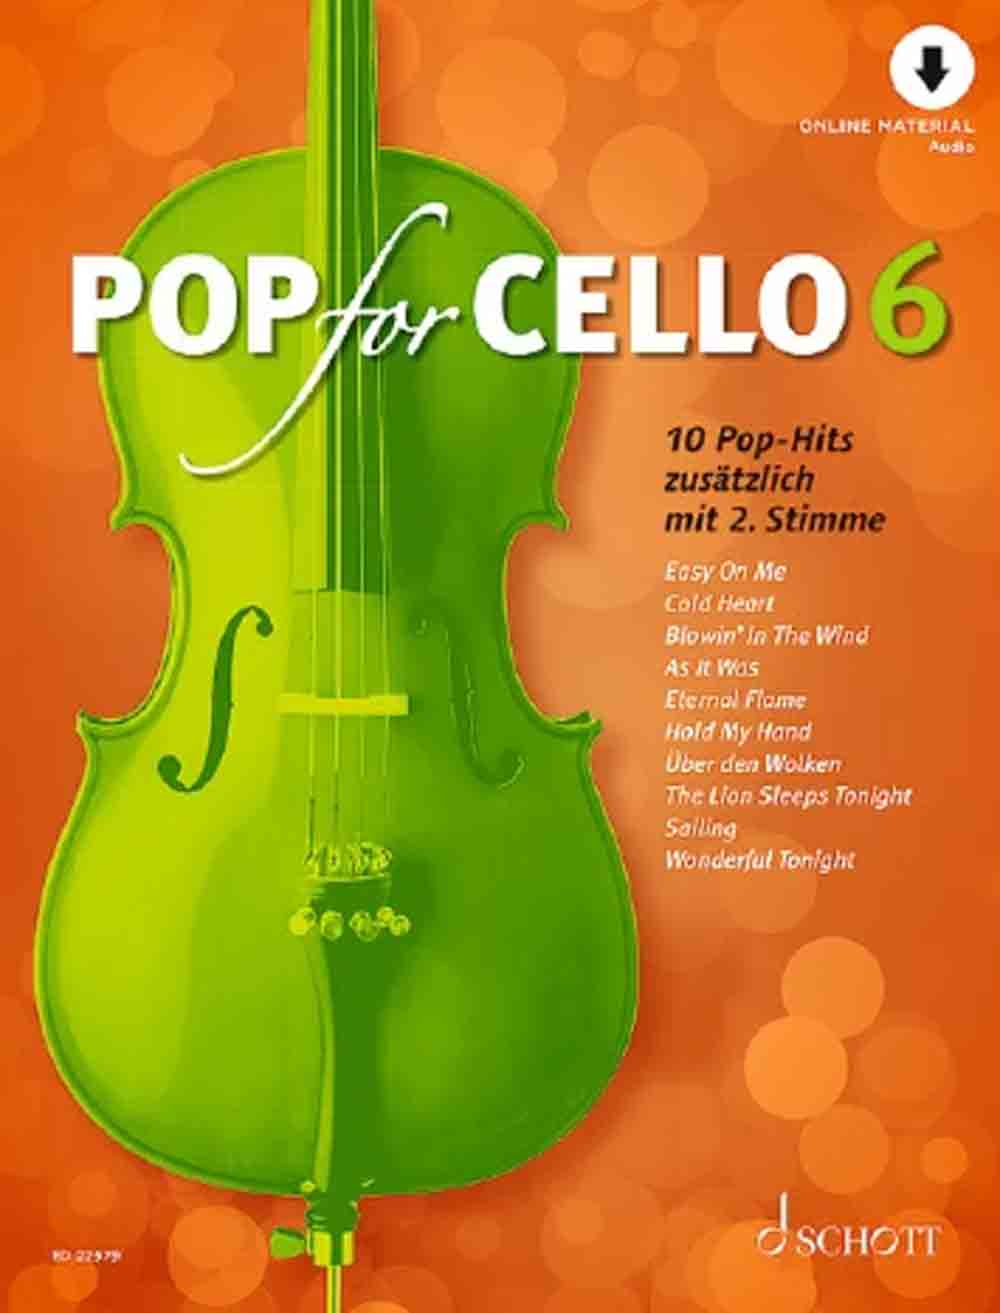 Schott Music Group, »Cello rocks!« Frische Arrangements für Cellisten, Neuerscheinung bei Schott Music